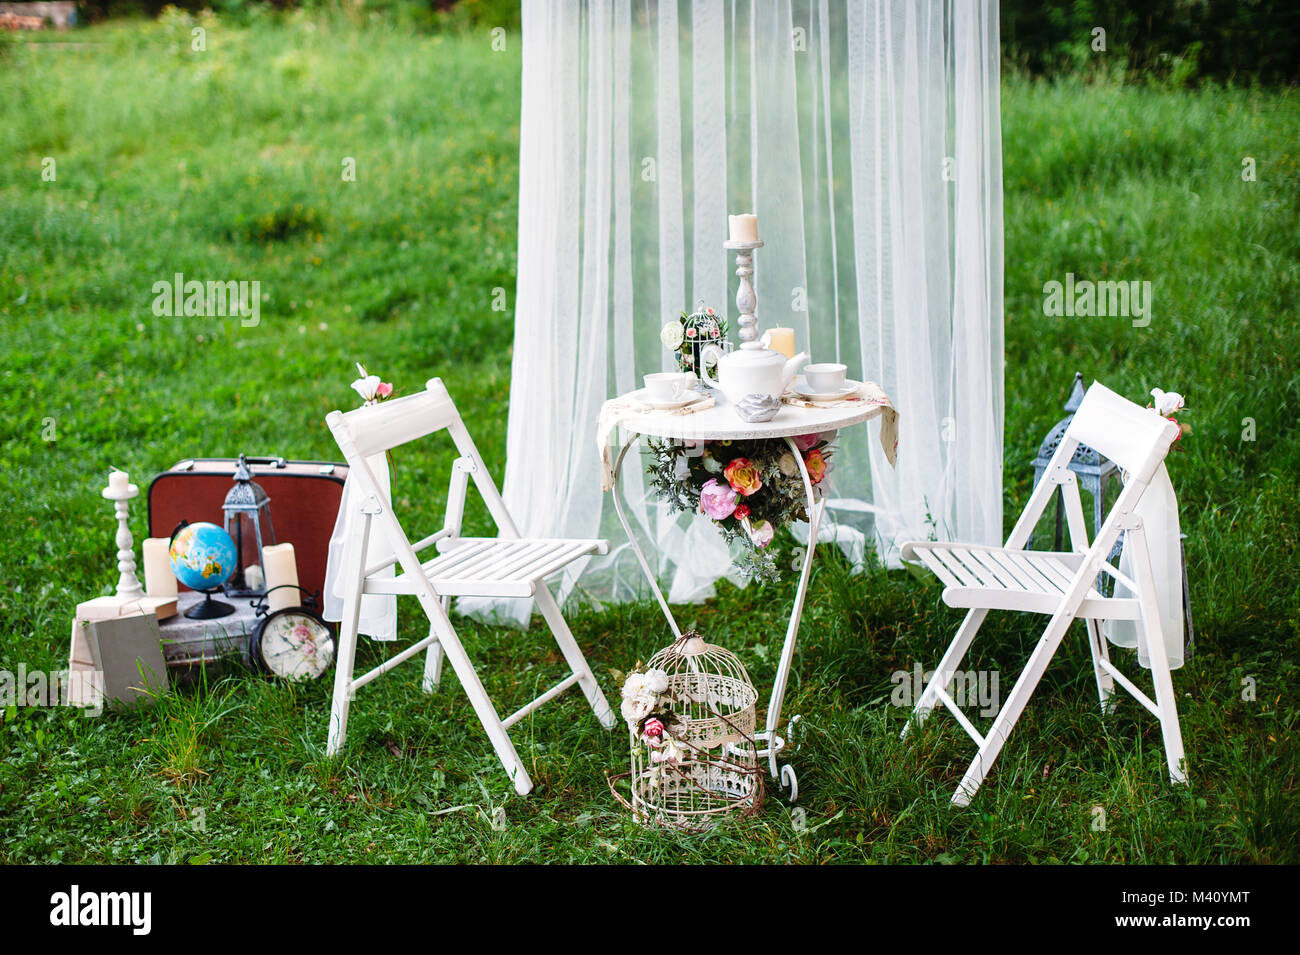 2,179 Engagement Setup Images, Stock Photos & Vectors | Shutterstock